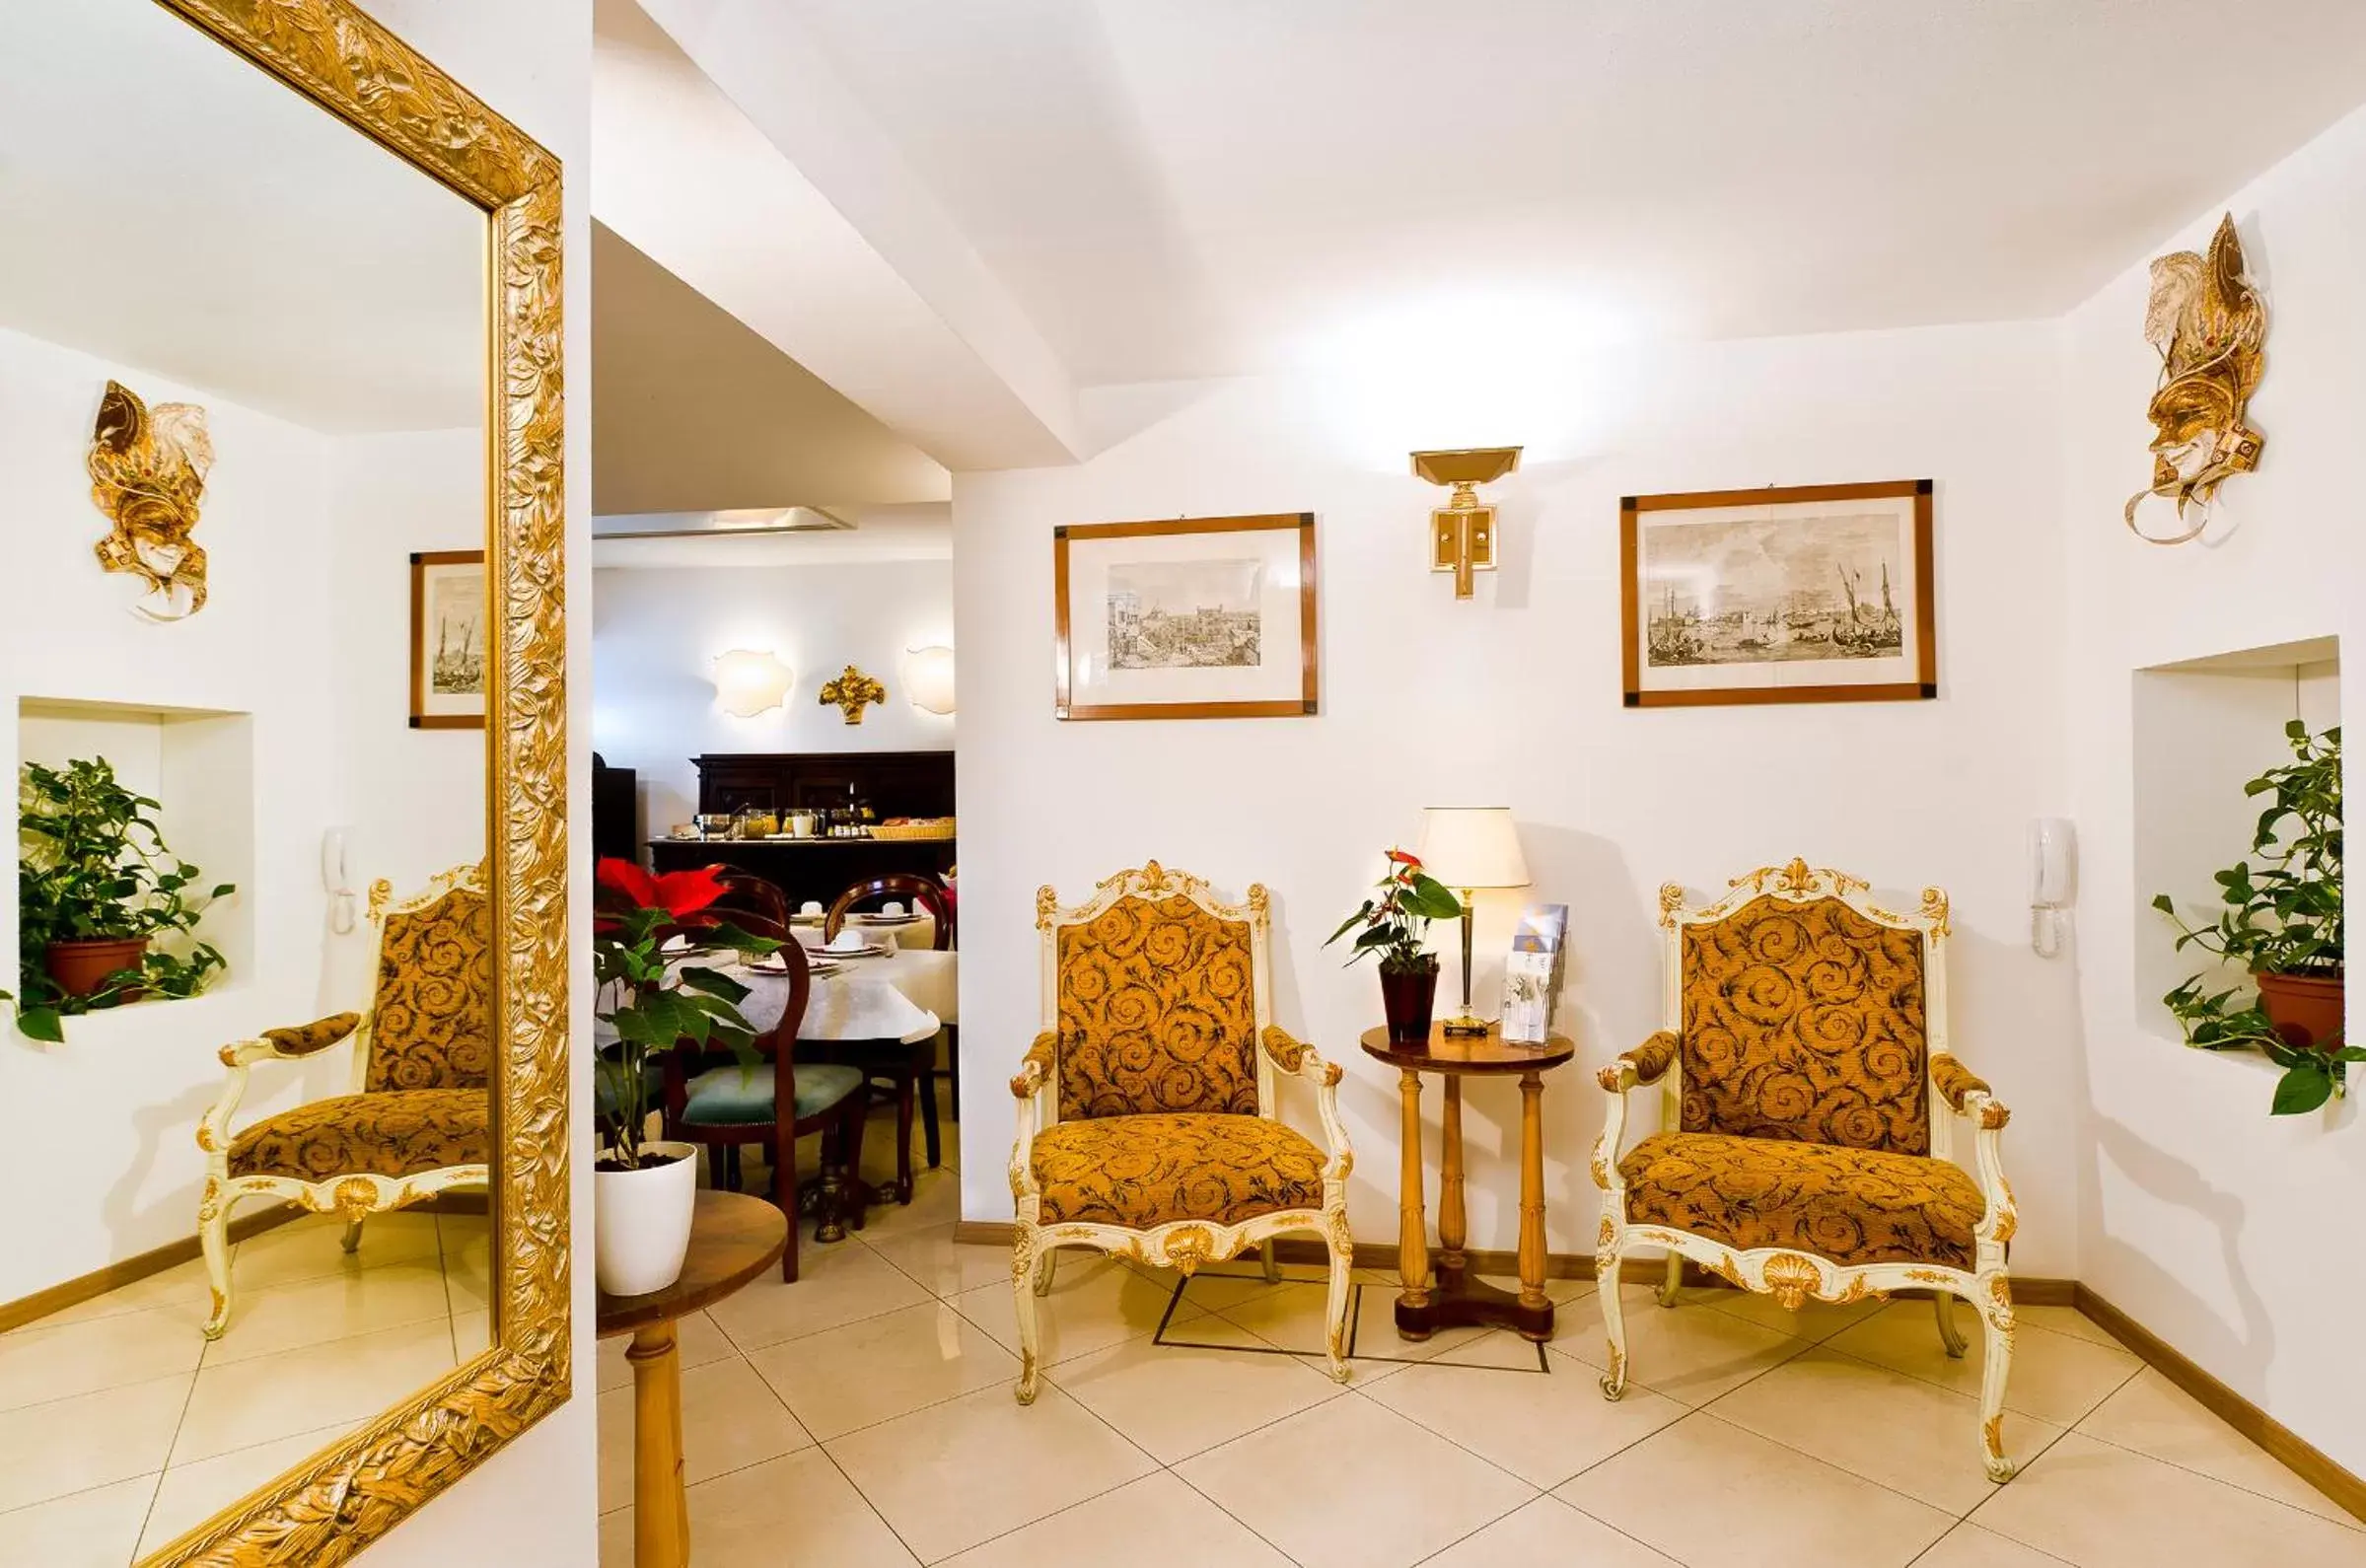 Lobby or reception in Hotel Giardinetto Venezia